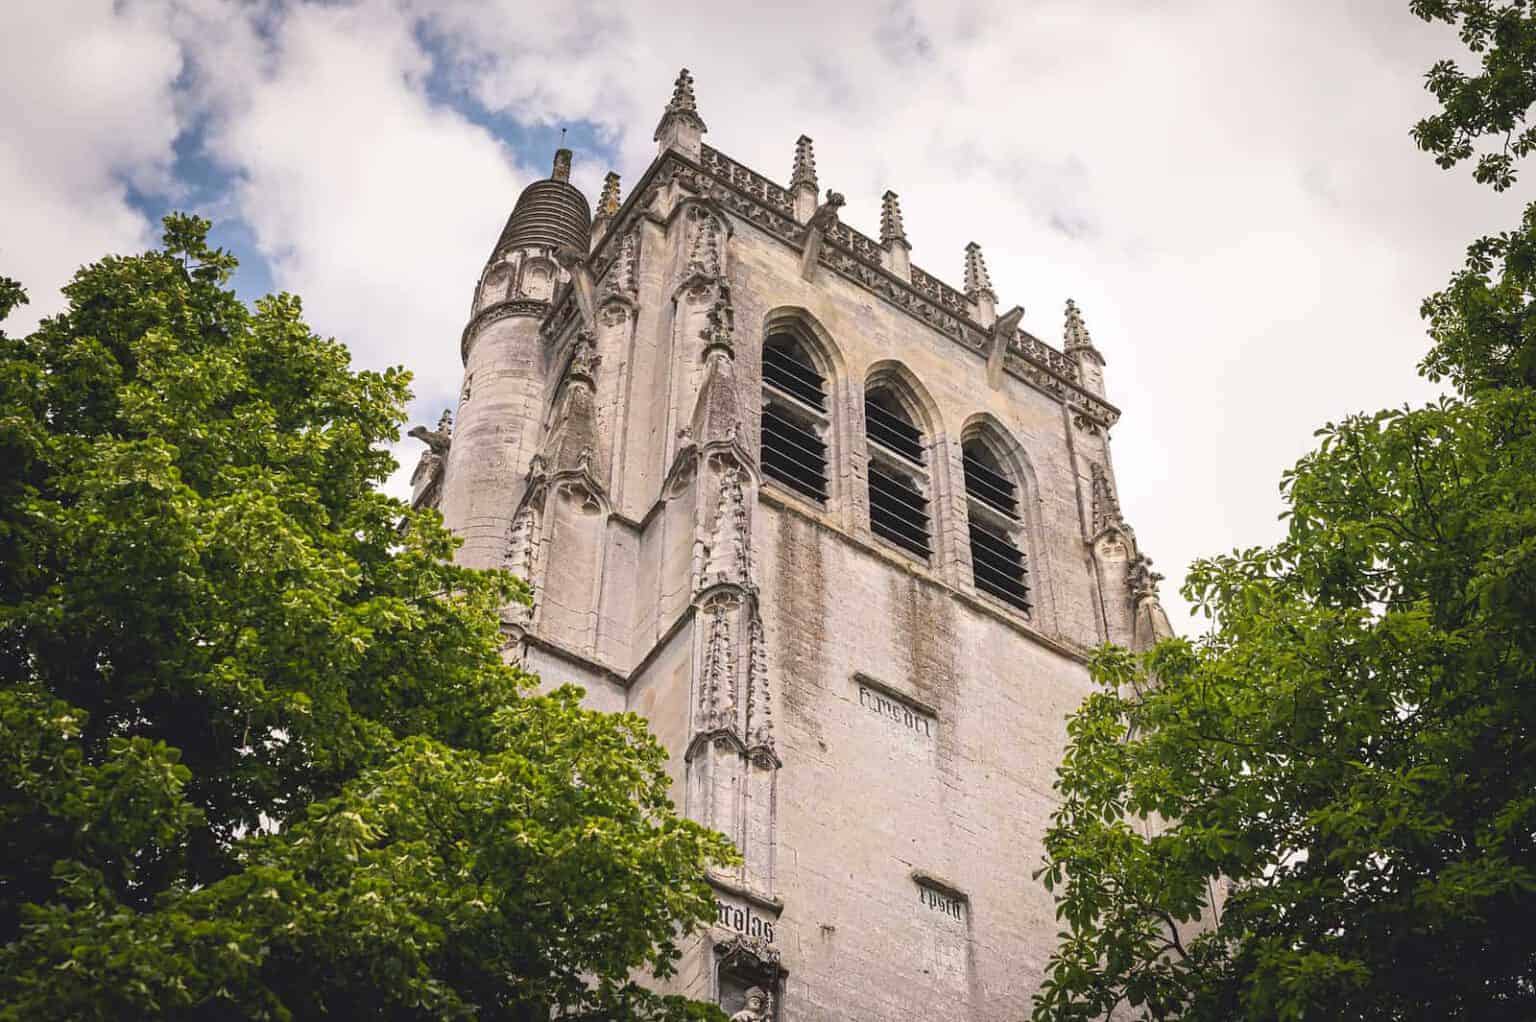 Tour en pierre historique à l'architecture gothique surplombant des arbres verdoyants contre un ciel nuageux.